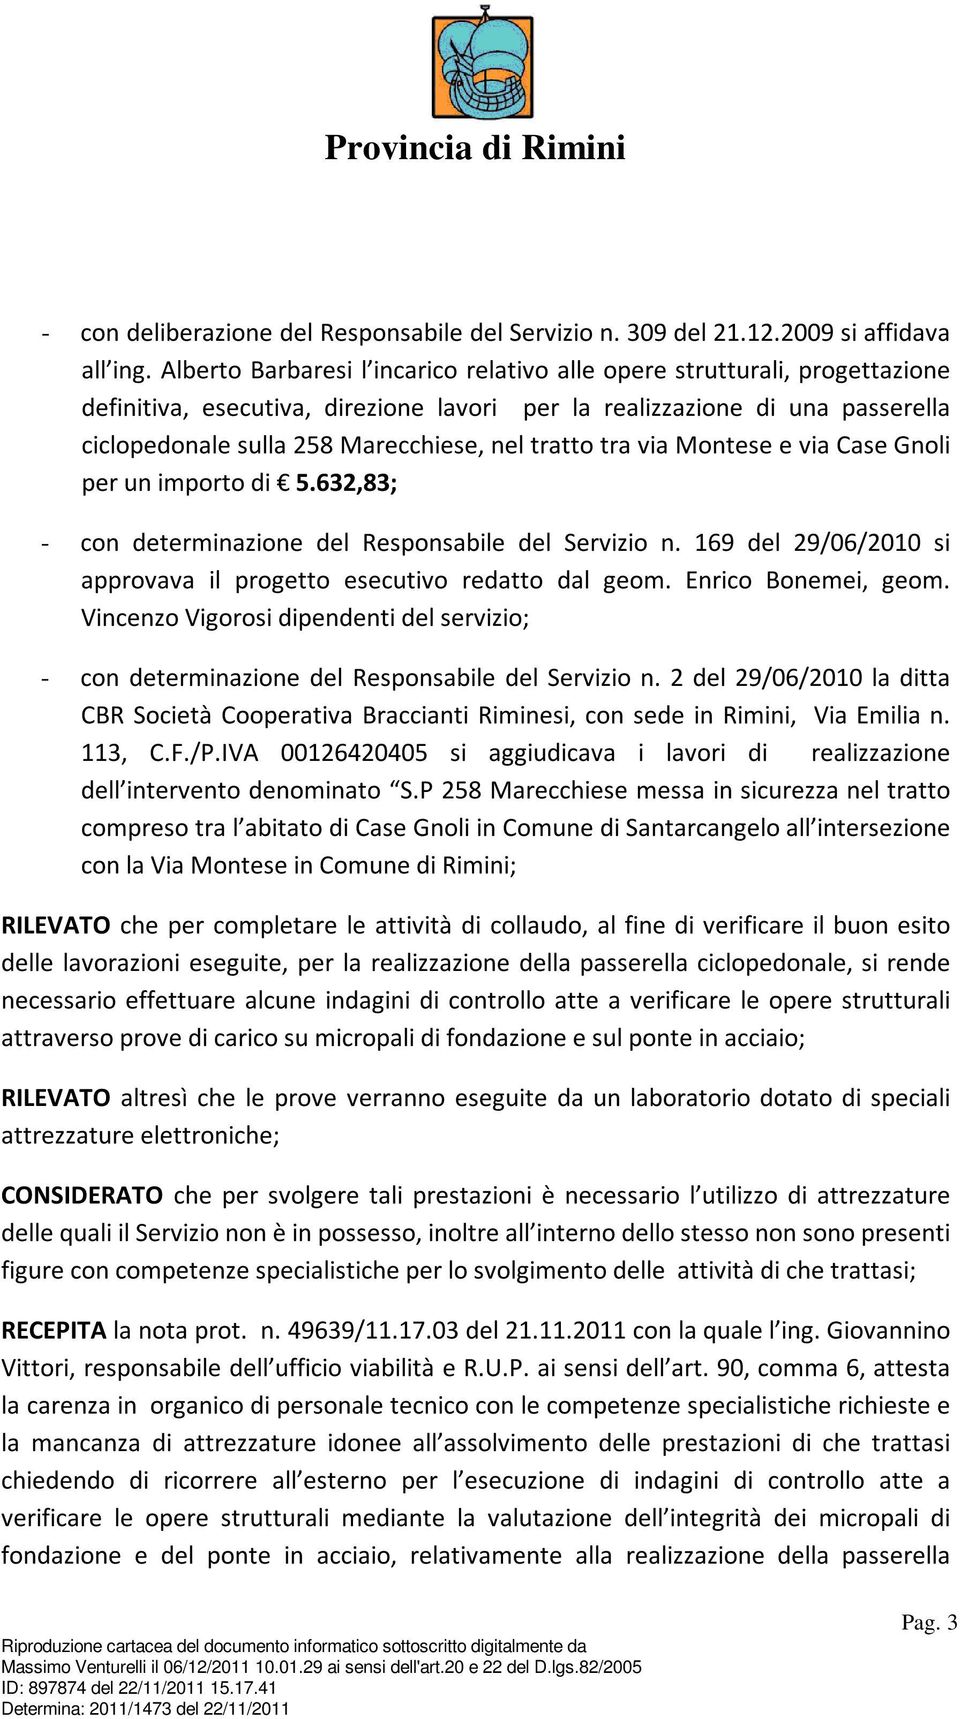 tratto tra via Montese e via Case Gnoli per un importo di 5.632,83; - con determinazione del Responsabile del Servizio n. 169 del 29/06/2010 si approvava il progetto esecutivo redatto dal geom.